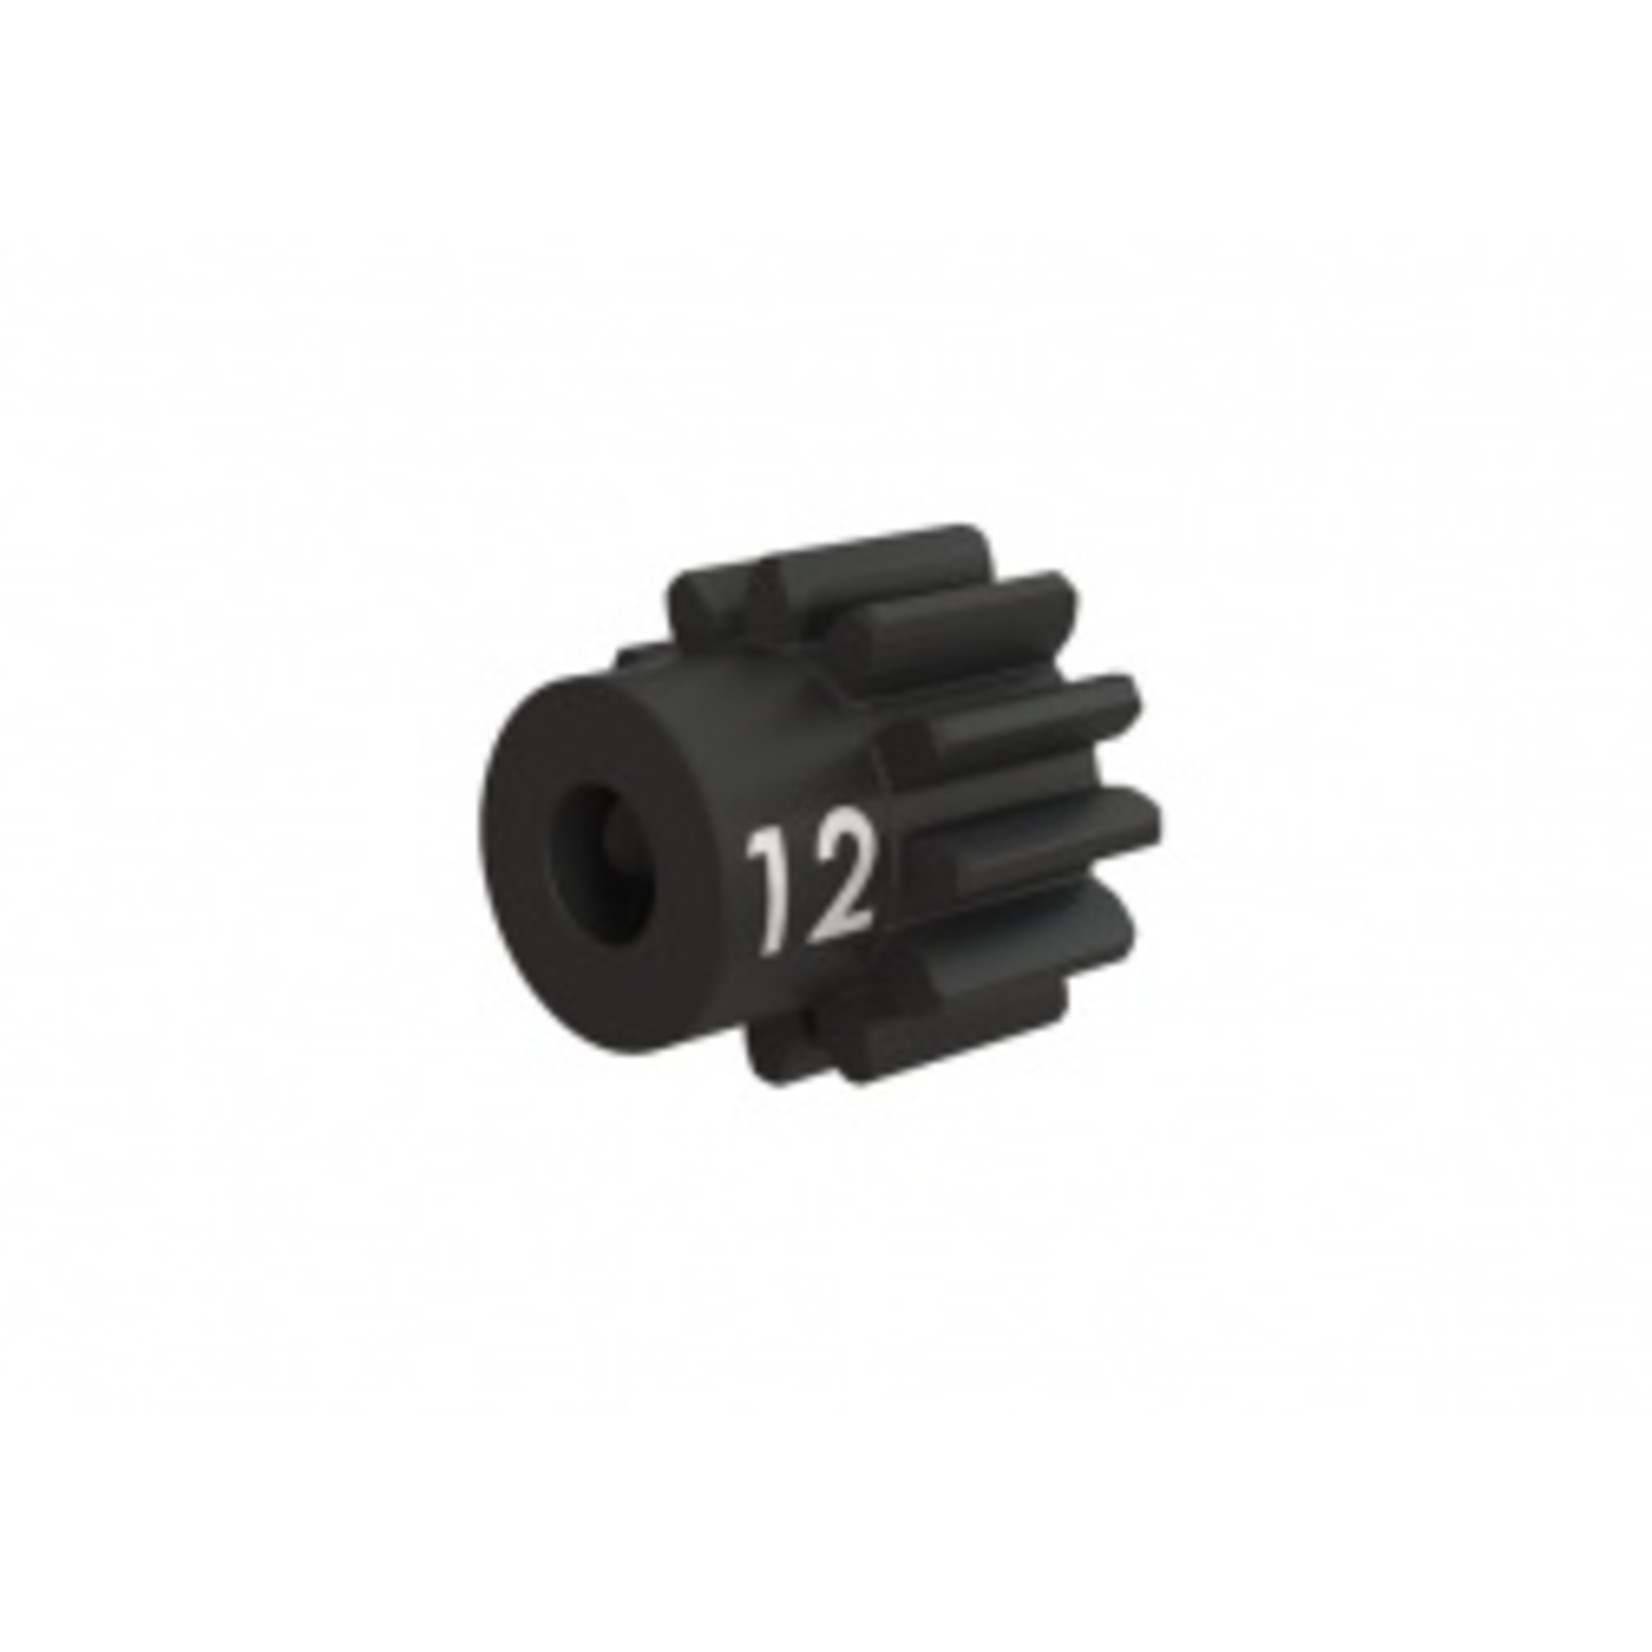 Traxxas 3942X Gear, 12-T pinion (32-p), heavy duty (machined, hardened steel) (fits 3mm shaft)/ set screw